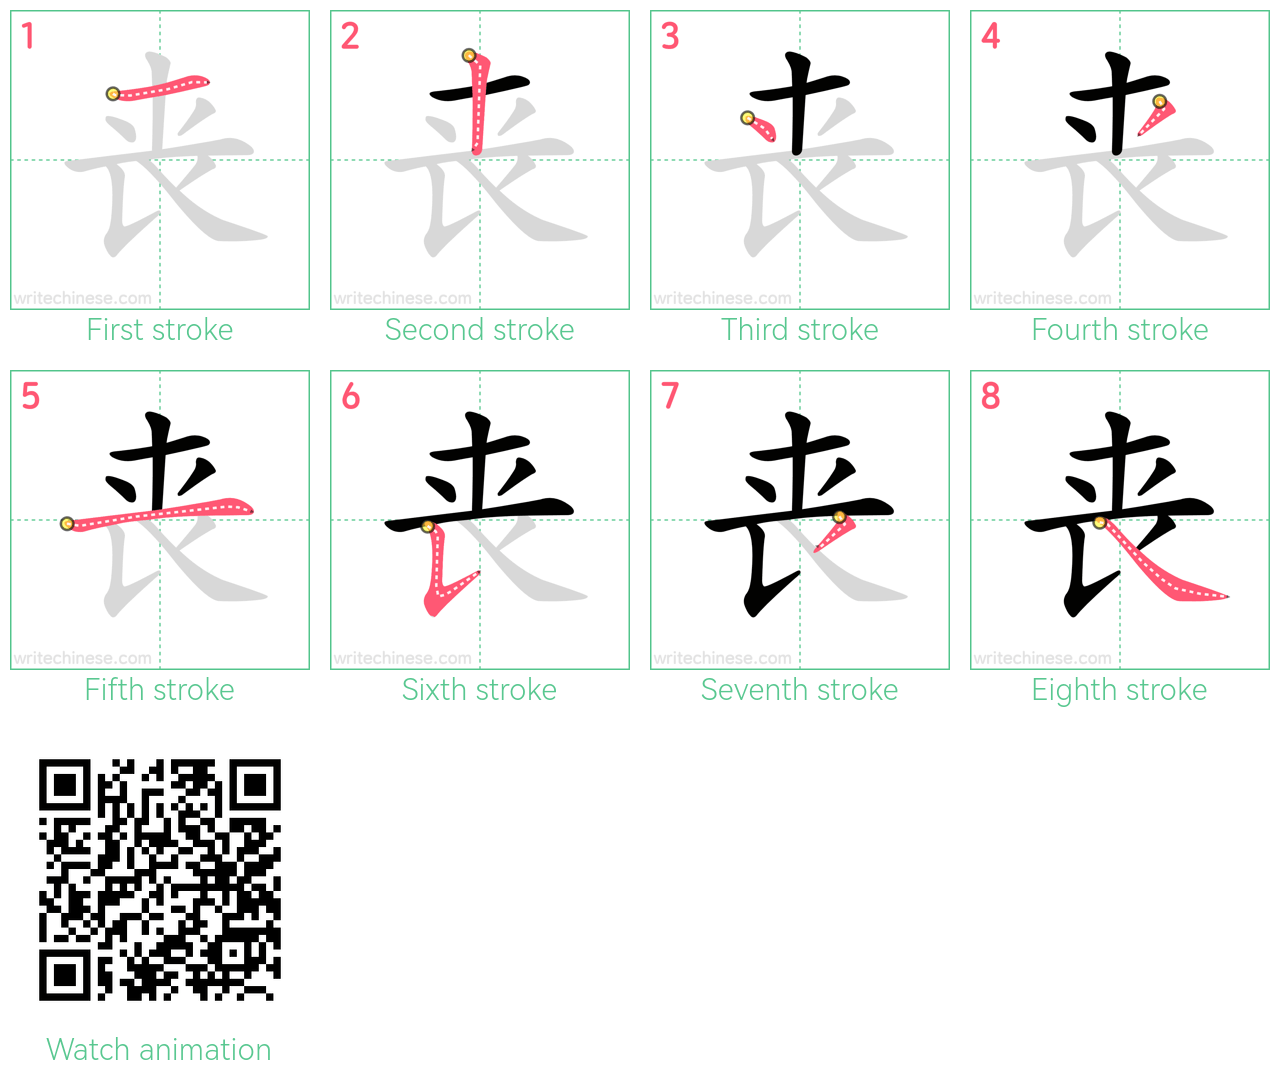 丧 step-by-step stroke order diagrams